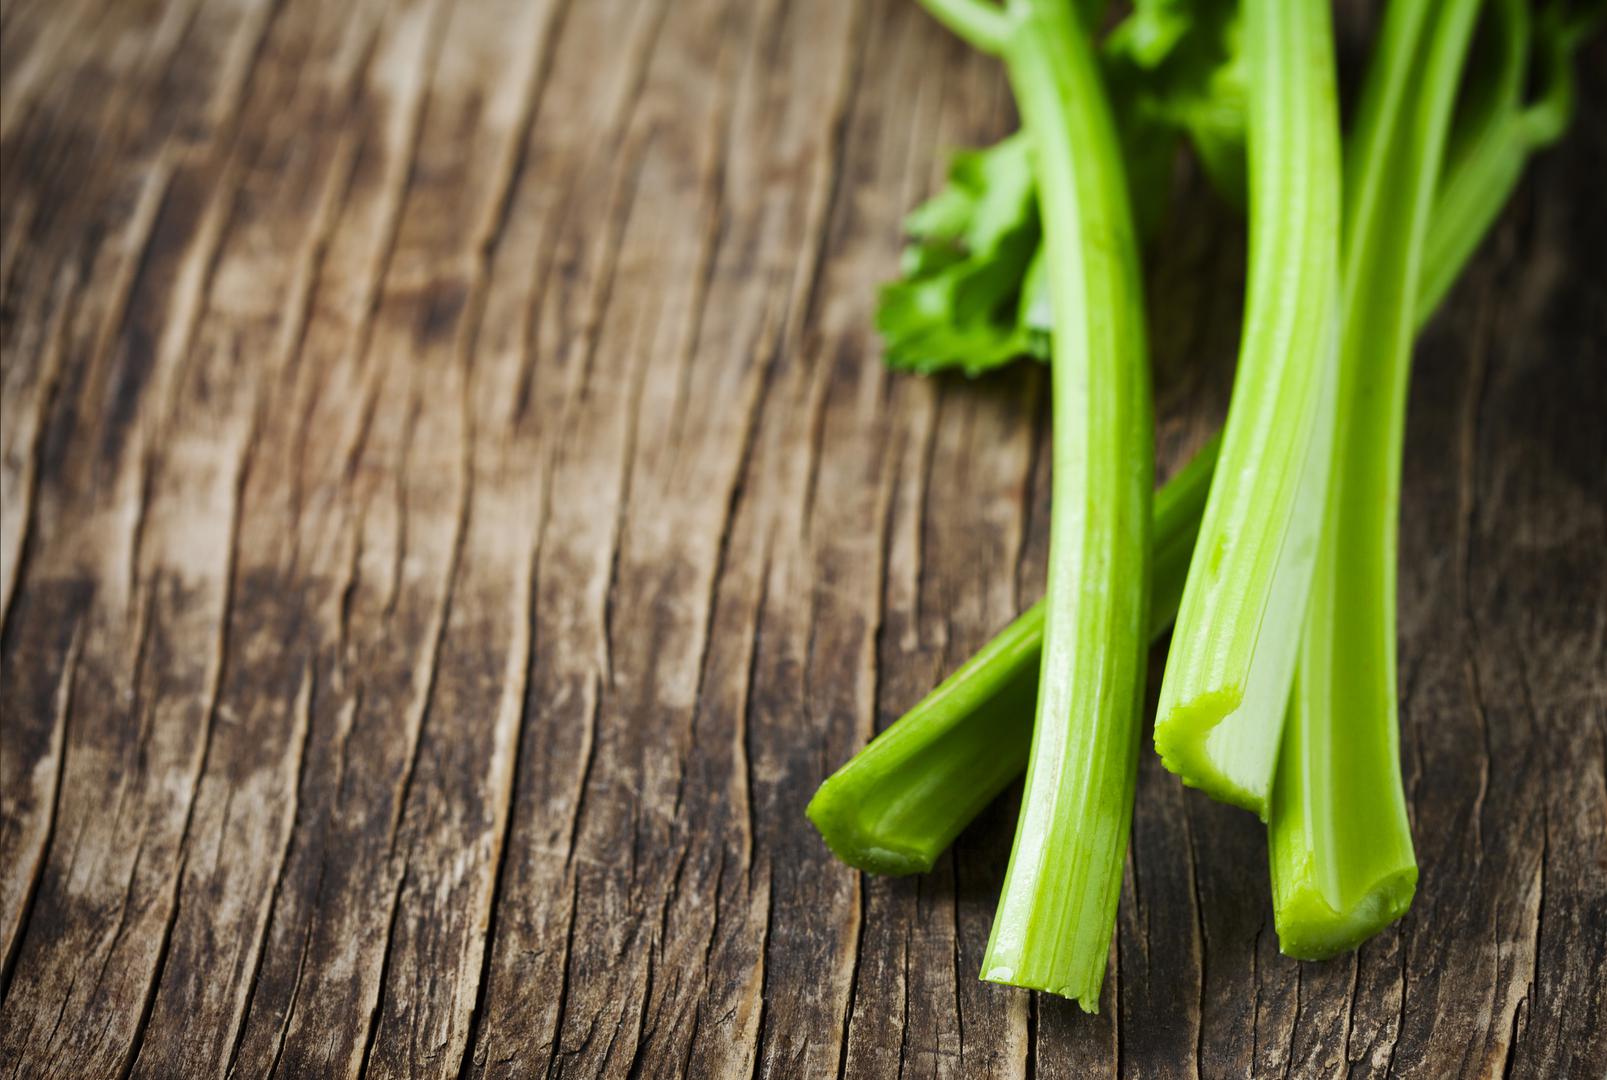 Naime, celer se koristi još od davnina u svrhu poboljšanja i poticanja potencije jer sadrži eterična ulja koja podižu spolnu moć. 
